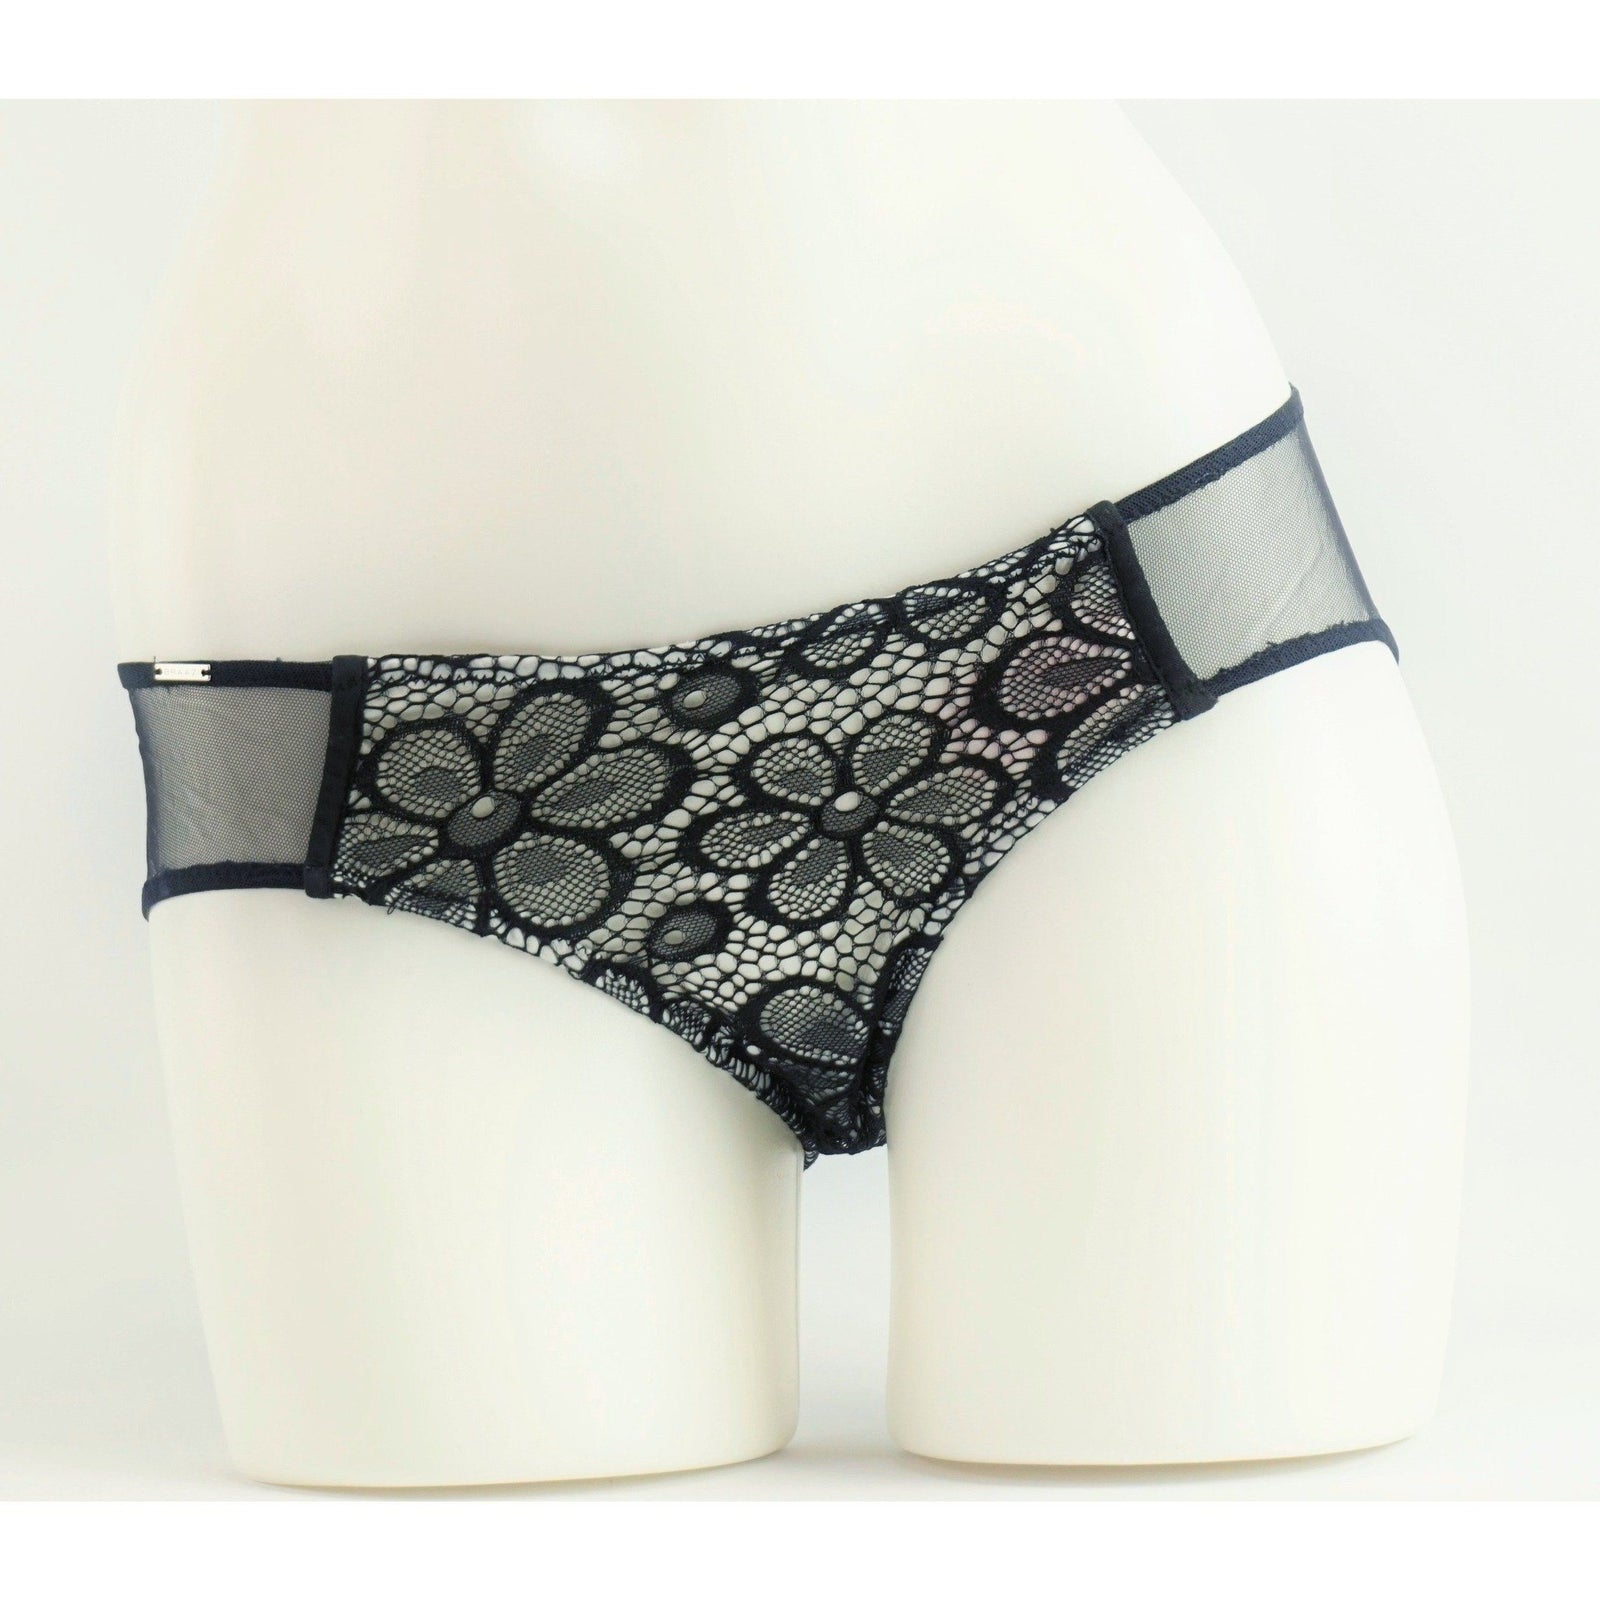 Panties - Meena Kay Panties With Lace Overlay In Black/White